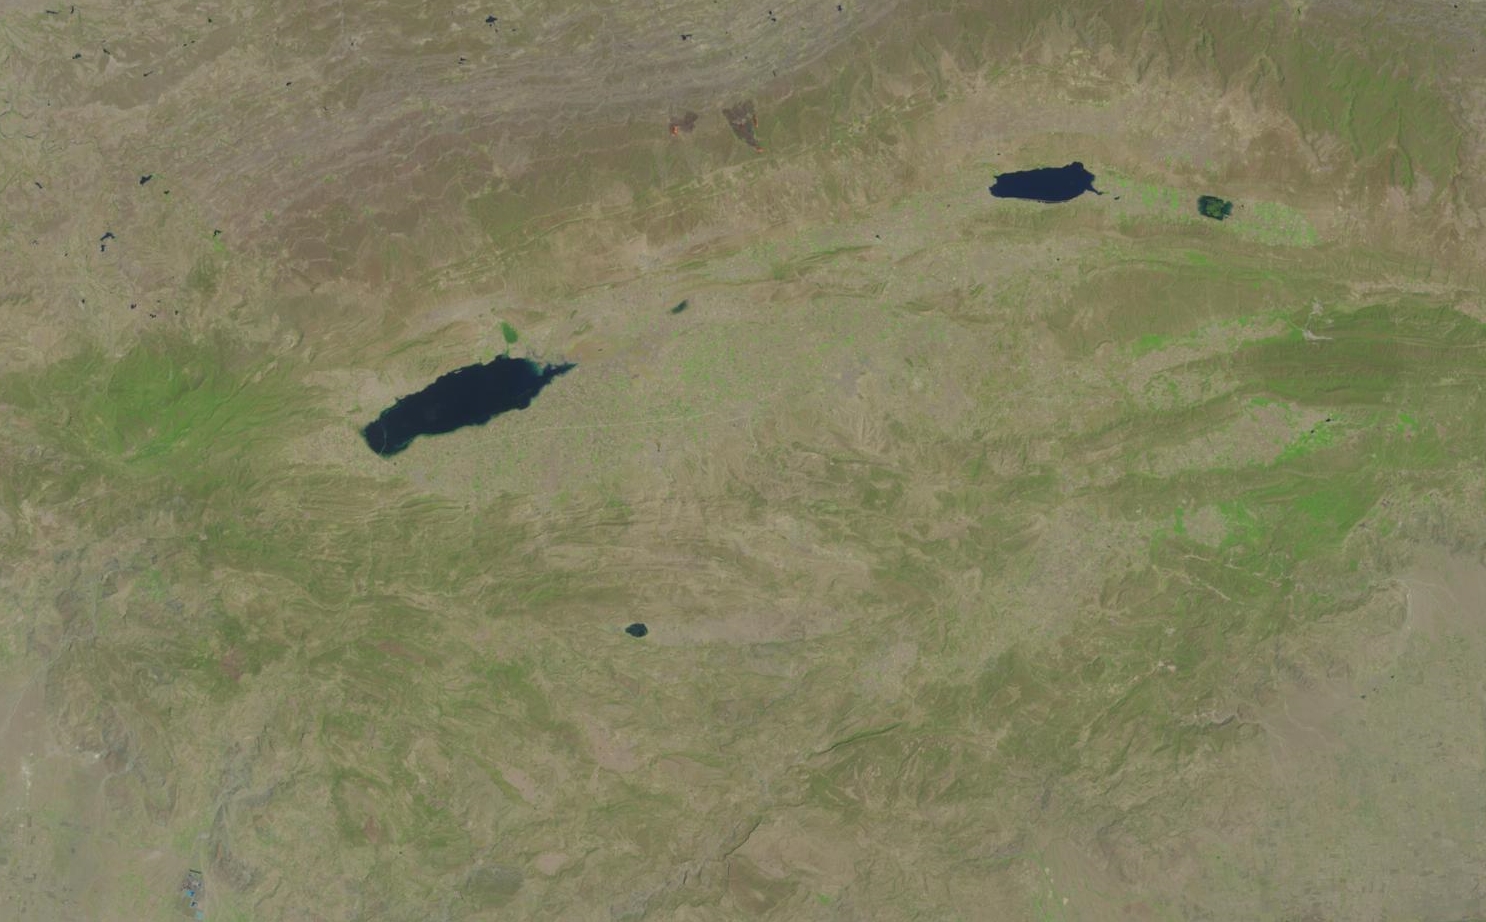 Uchhali Gölü, Soon Valley'de yer almaktadır